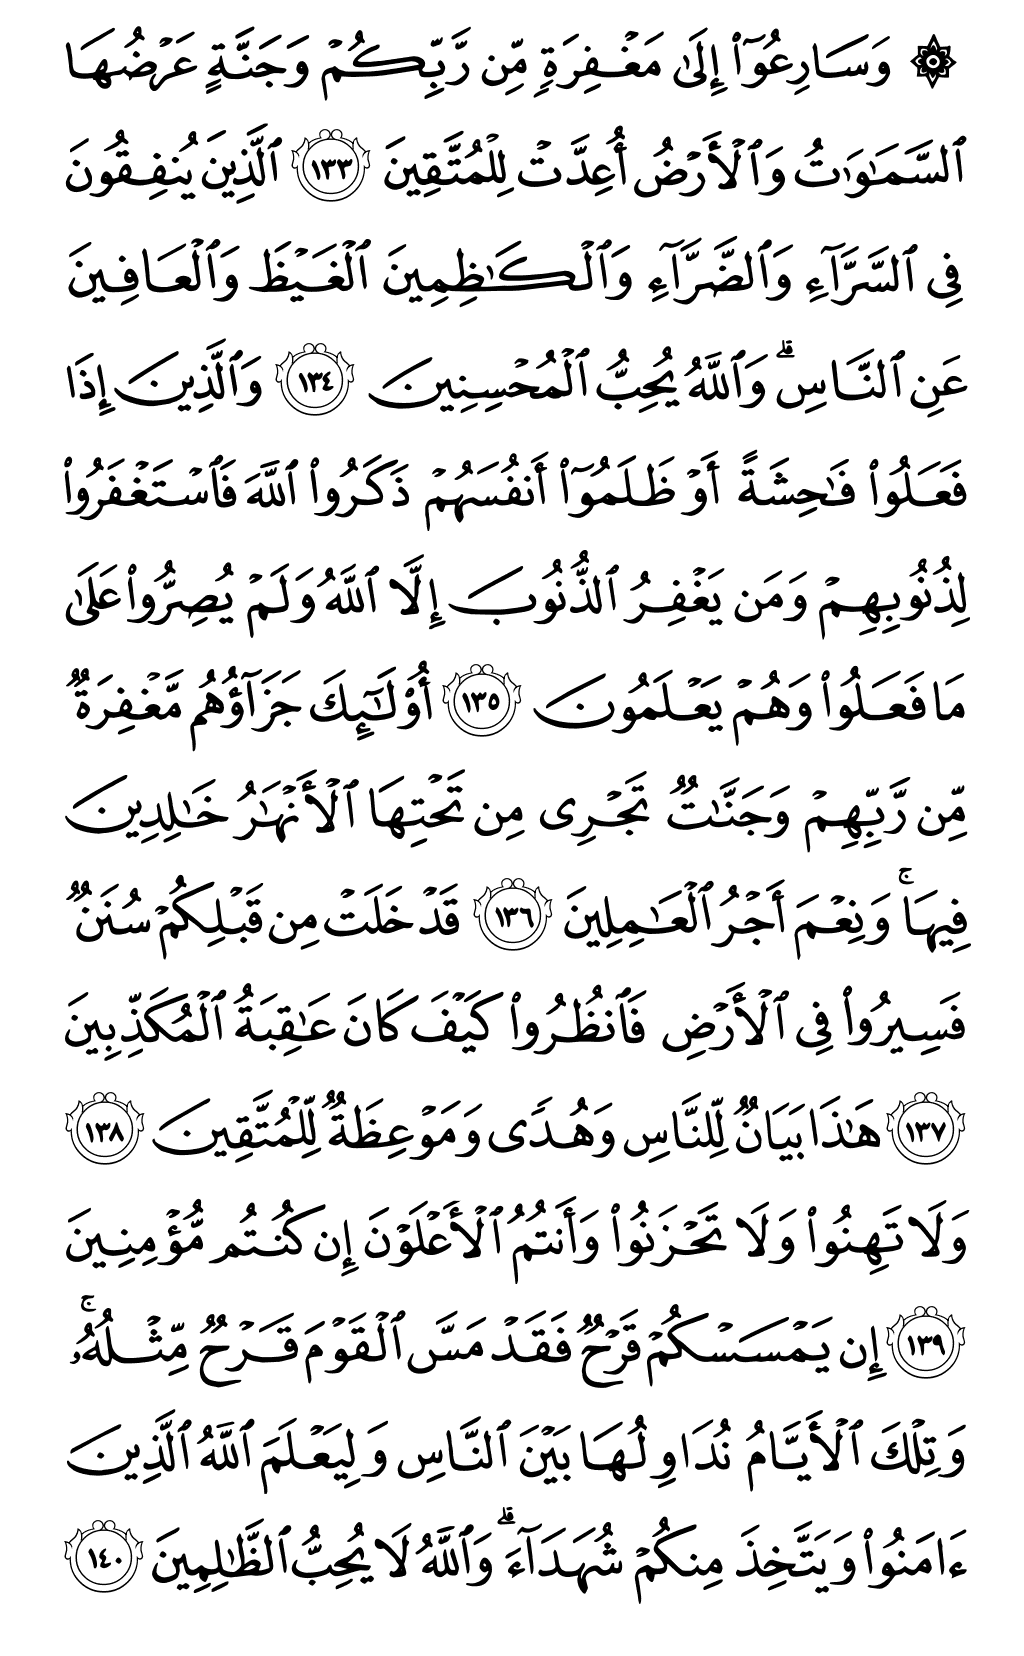 الصفحة رقم 67 من القرآن الكريم